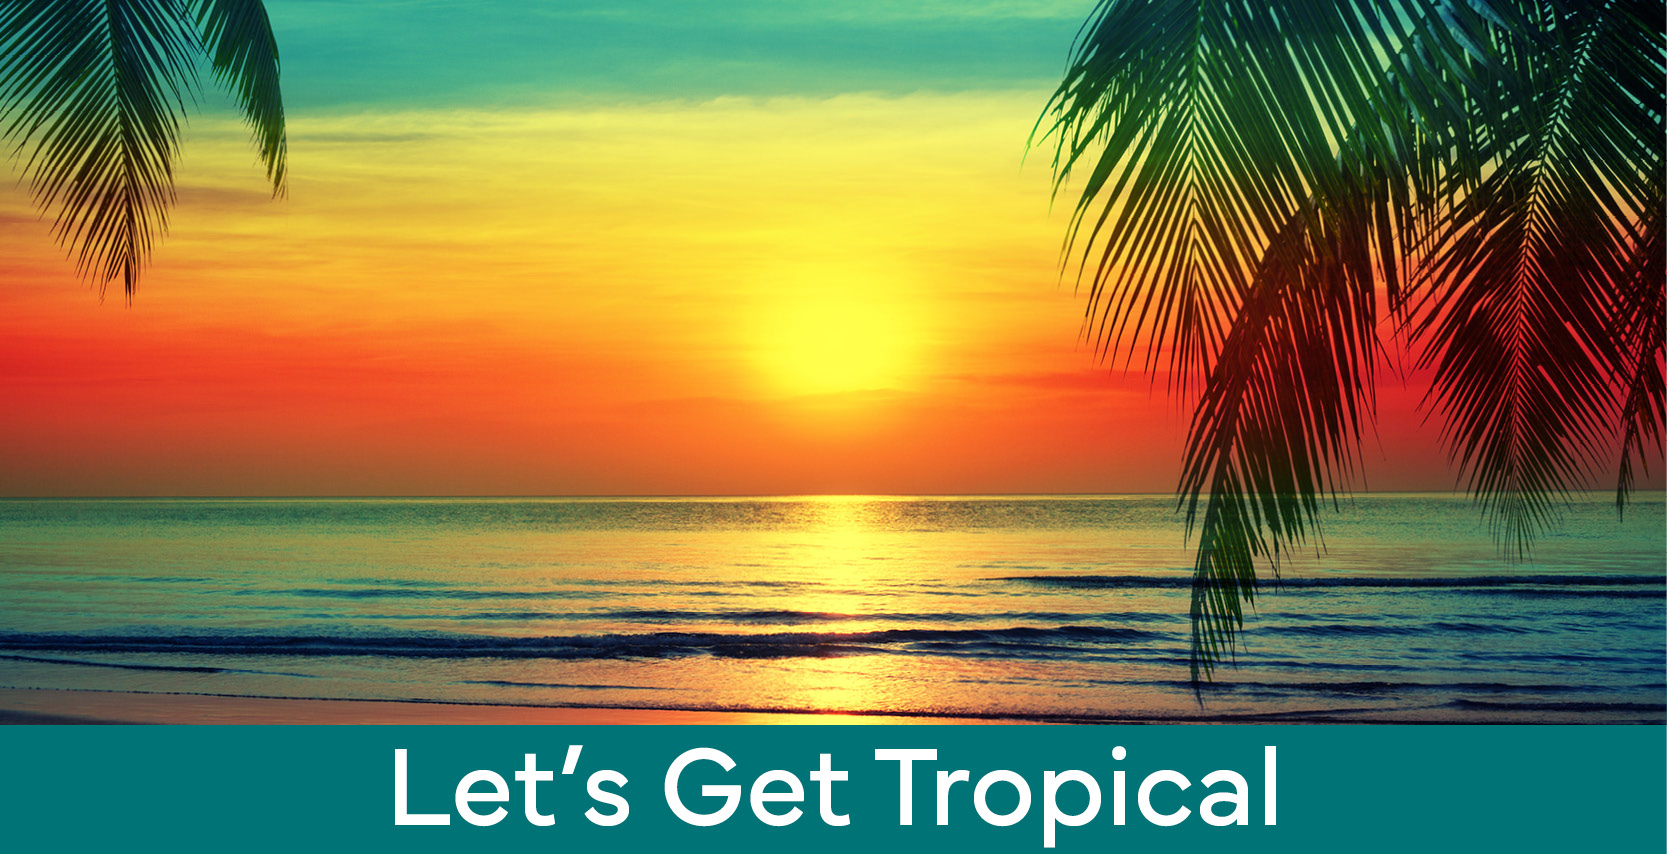 Maker Challenge: Let's Get Tropical